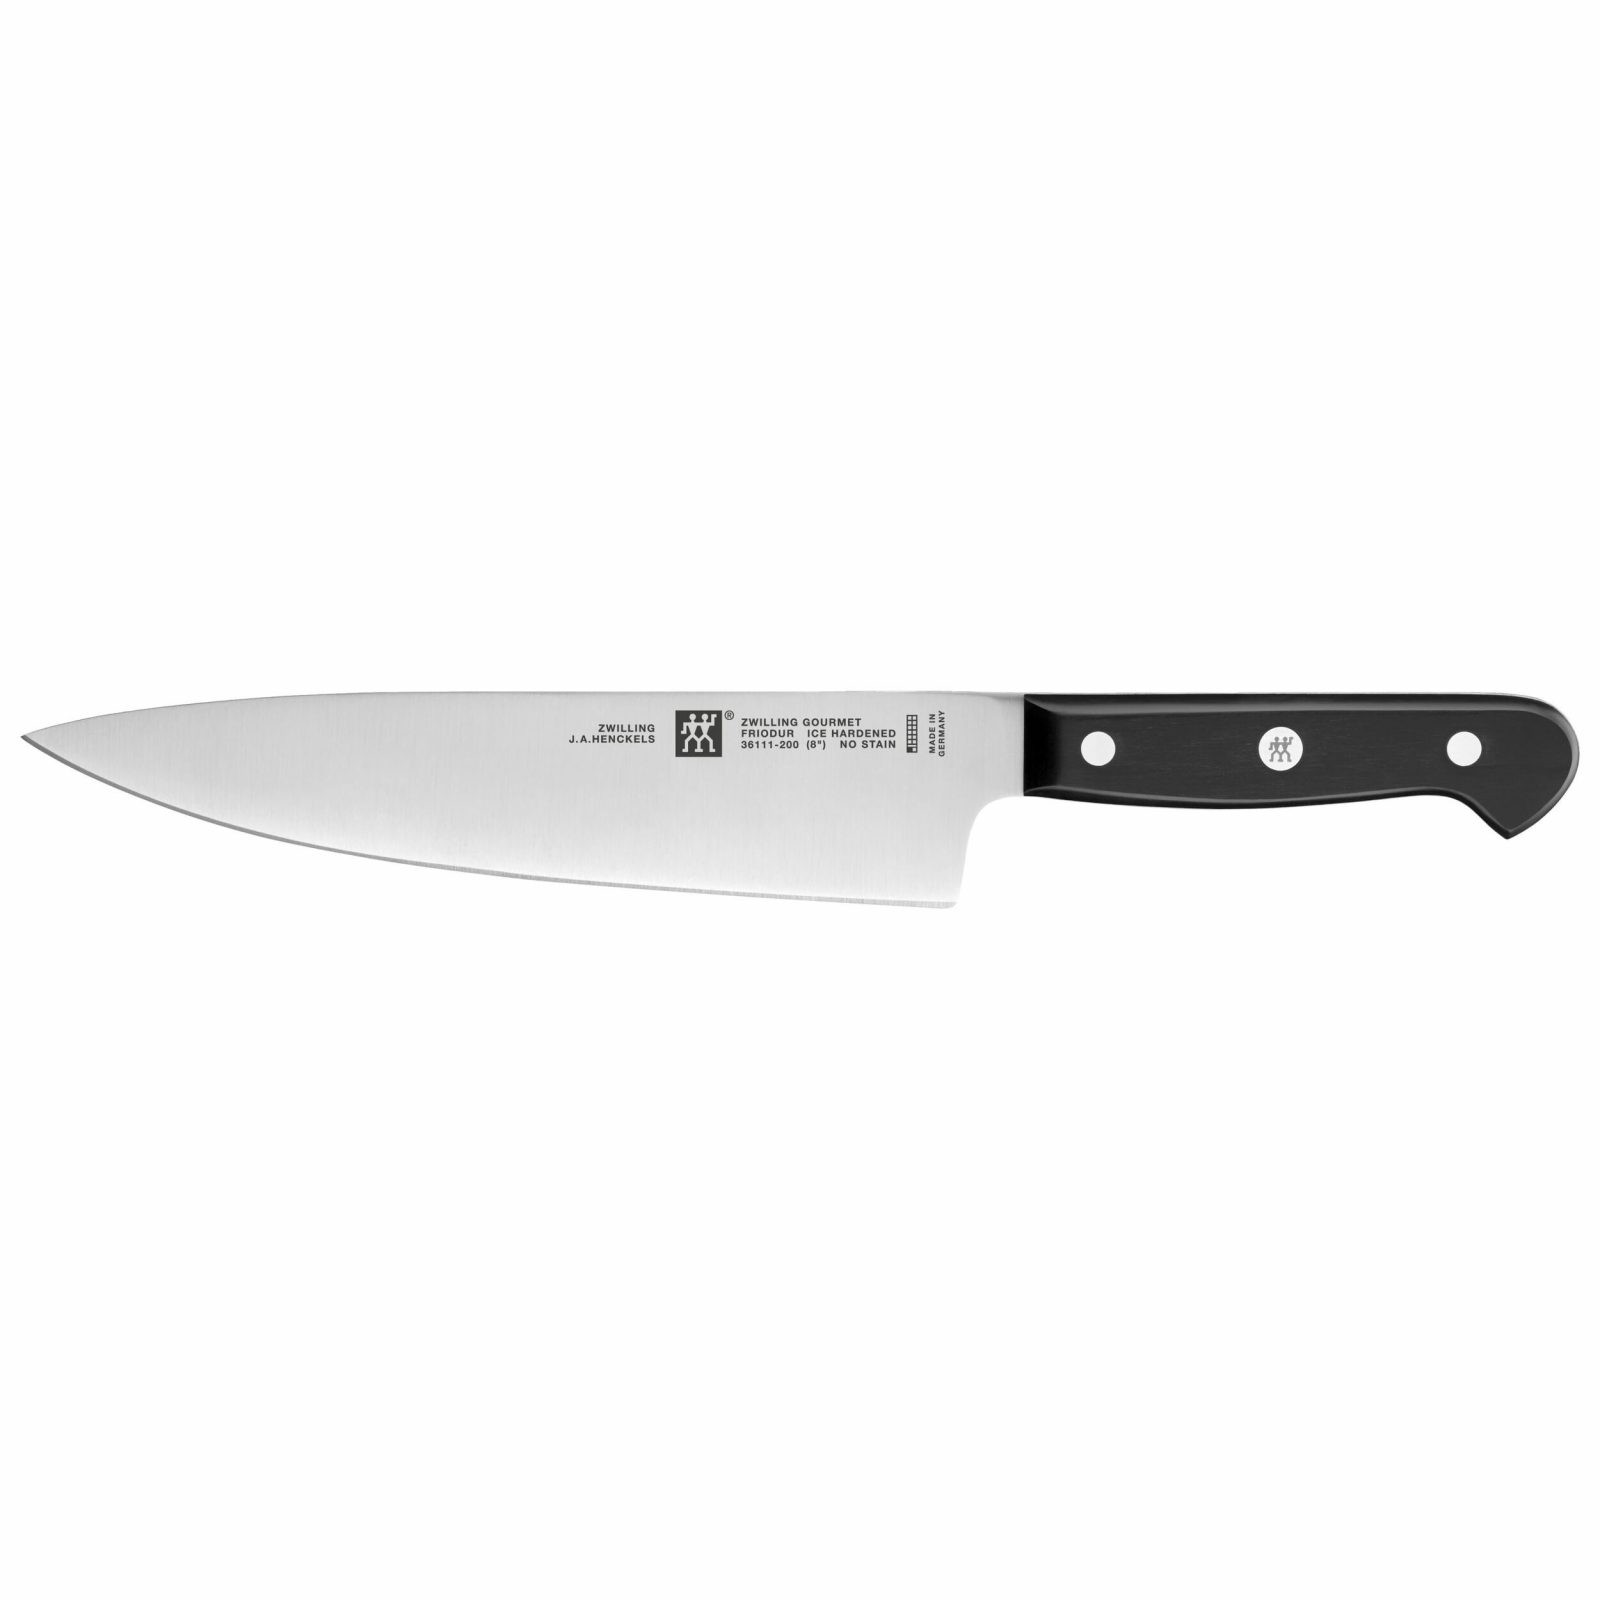 Cuchillo Cocinero/Chef de 20cm - Arcos Riviera 233624 BLANCO